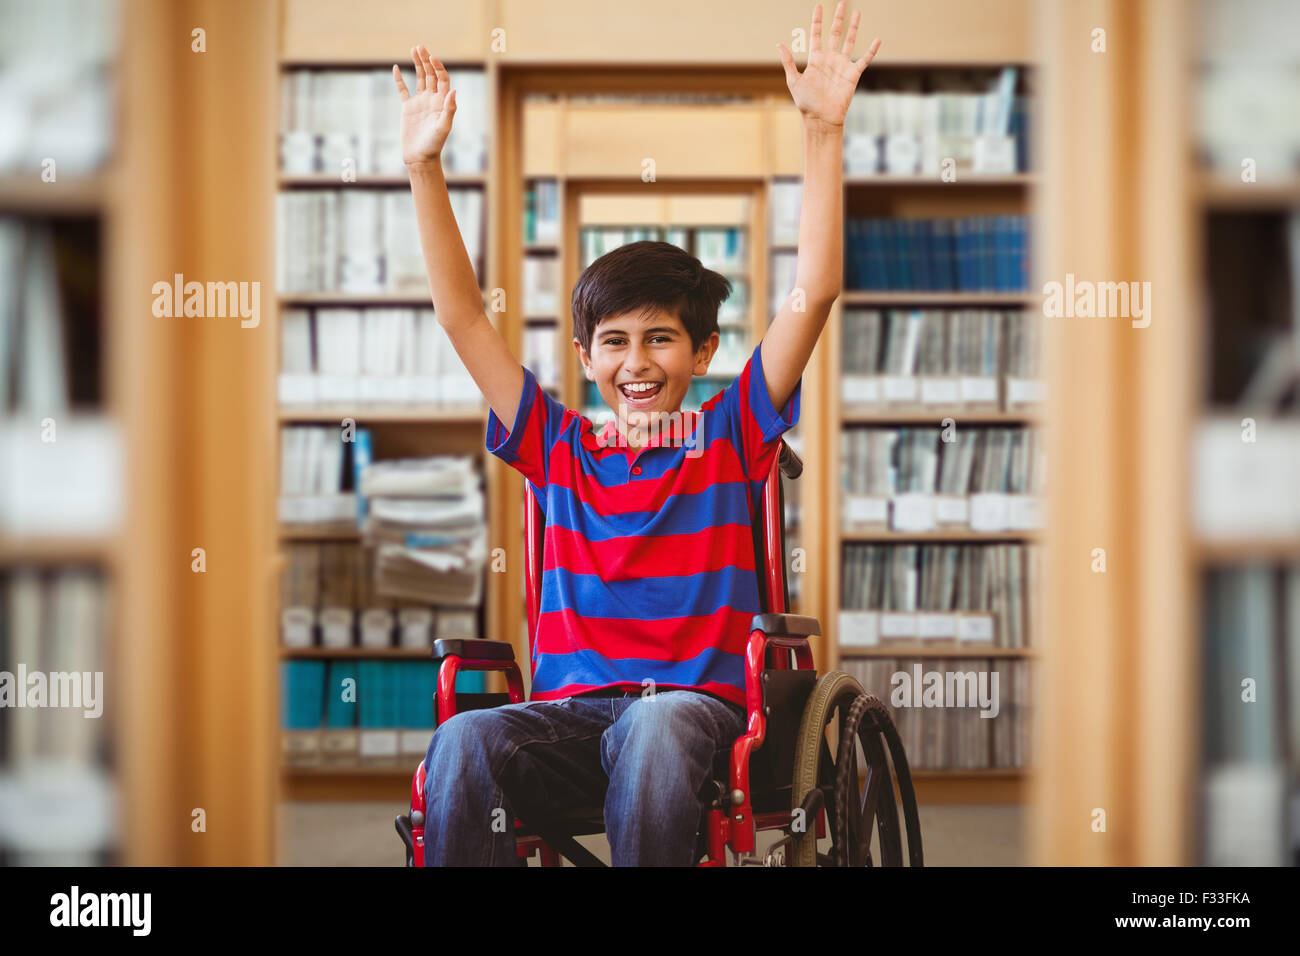 Immagine composita del ragazzo in sedia a rotelle nel corridoio della scuola Foto Stock